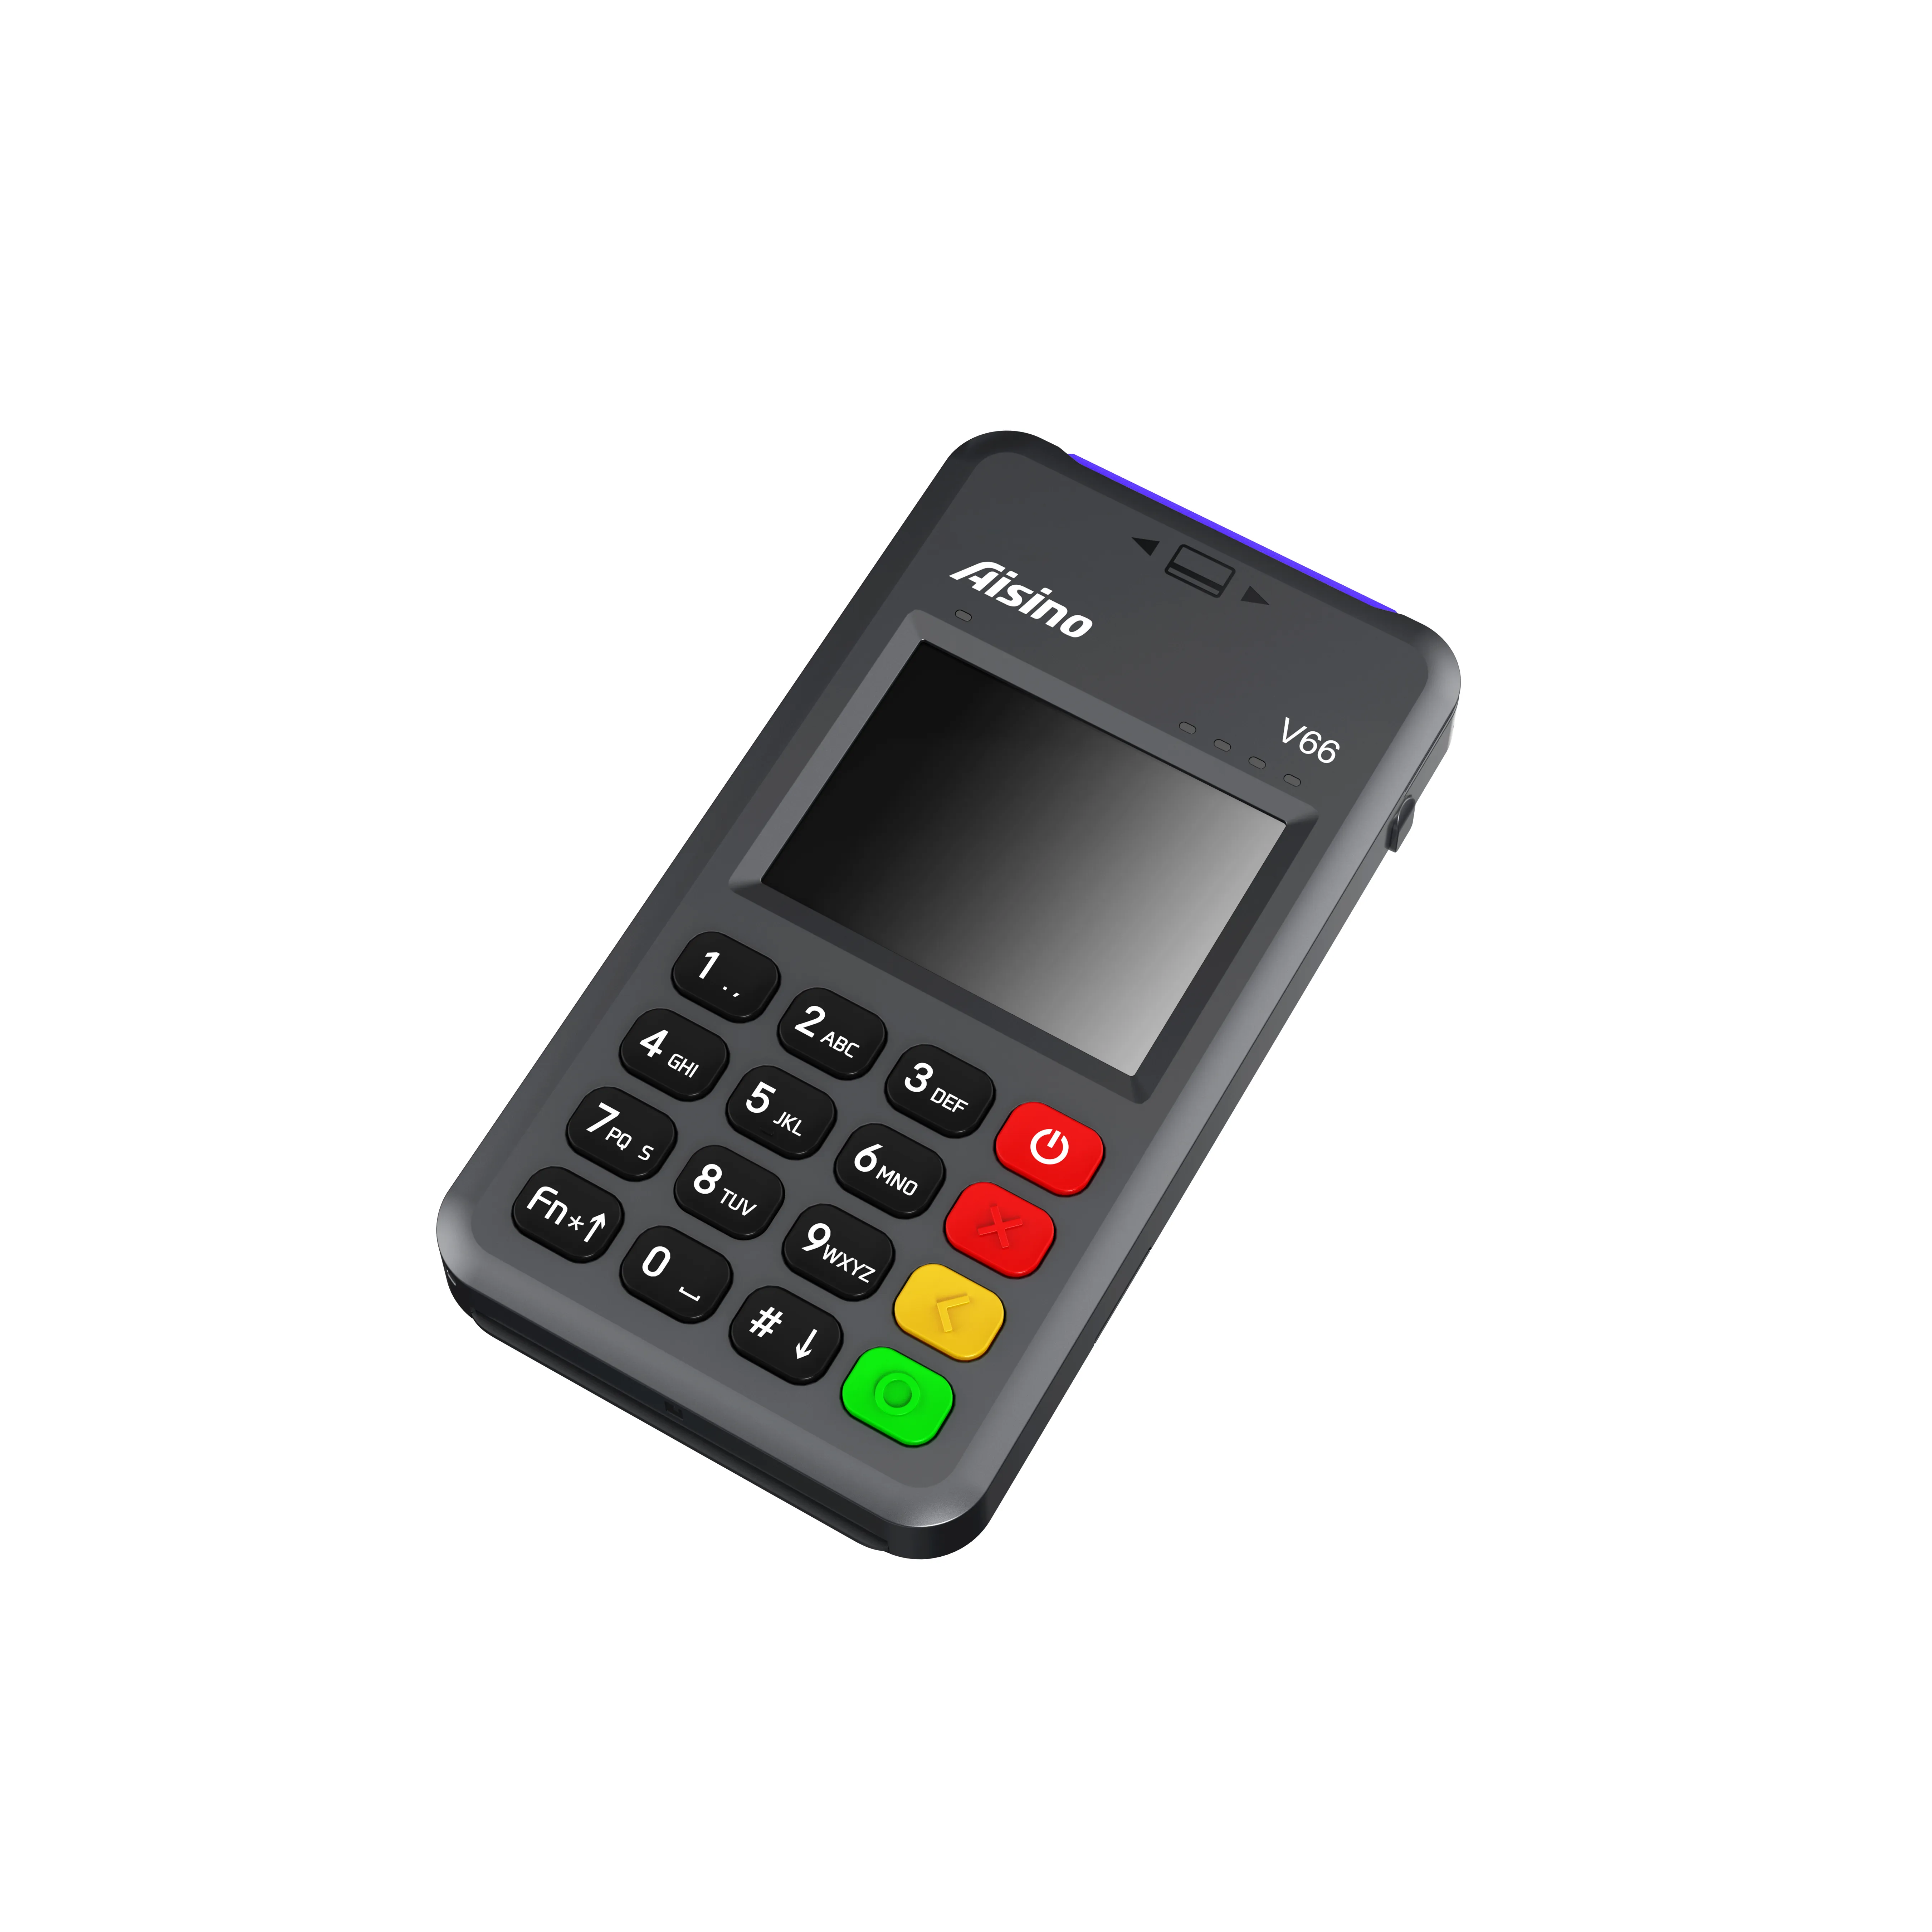 NFC бесконтактная Omni Payment Aisino V66 POS-машина традиционная POS